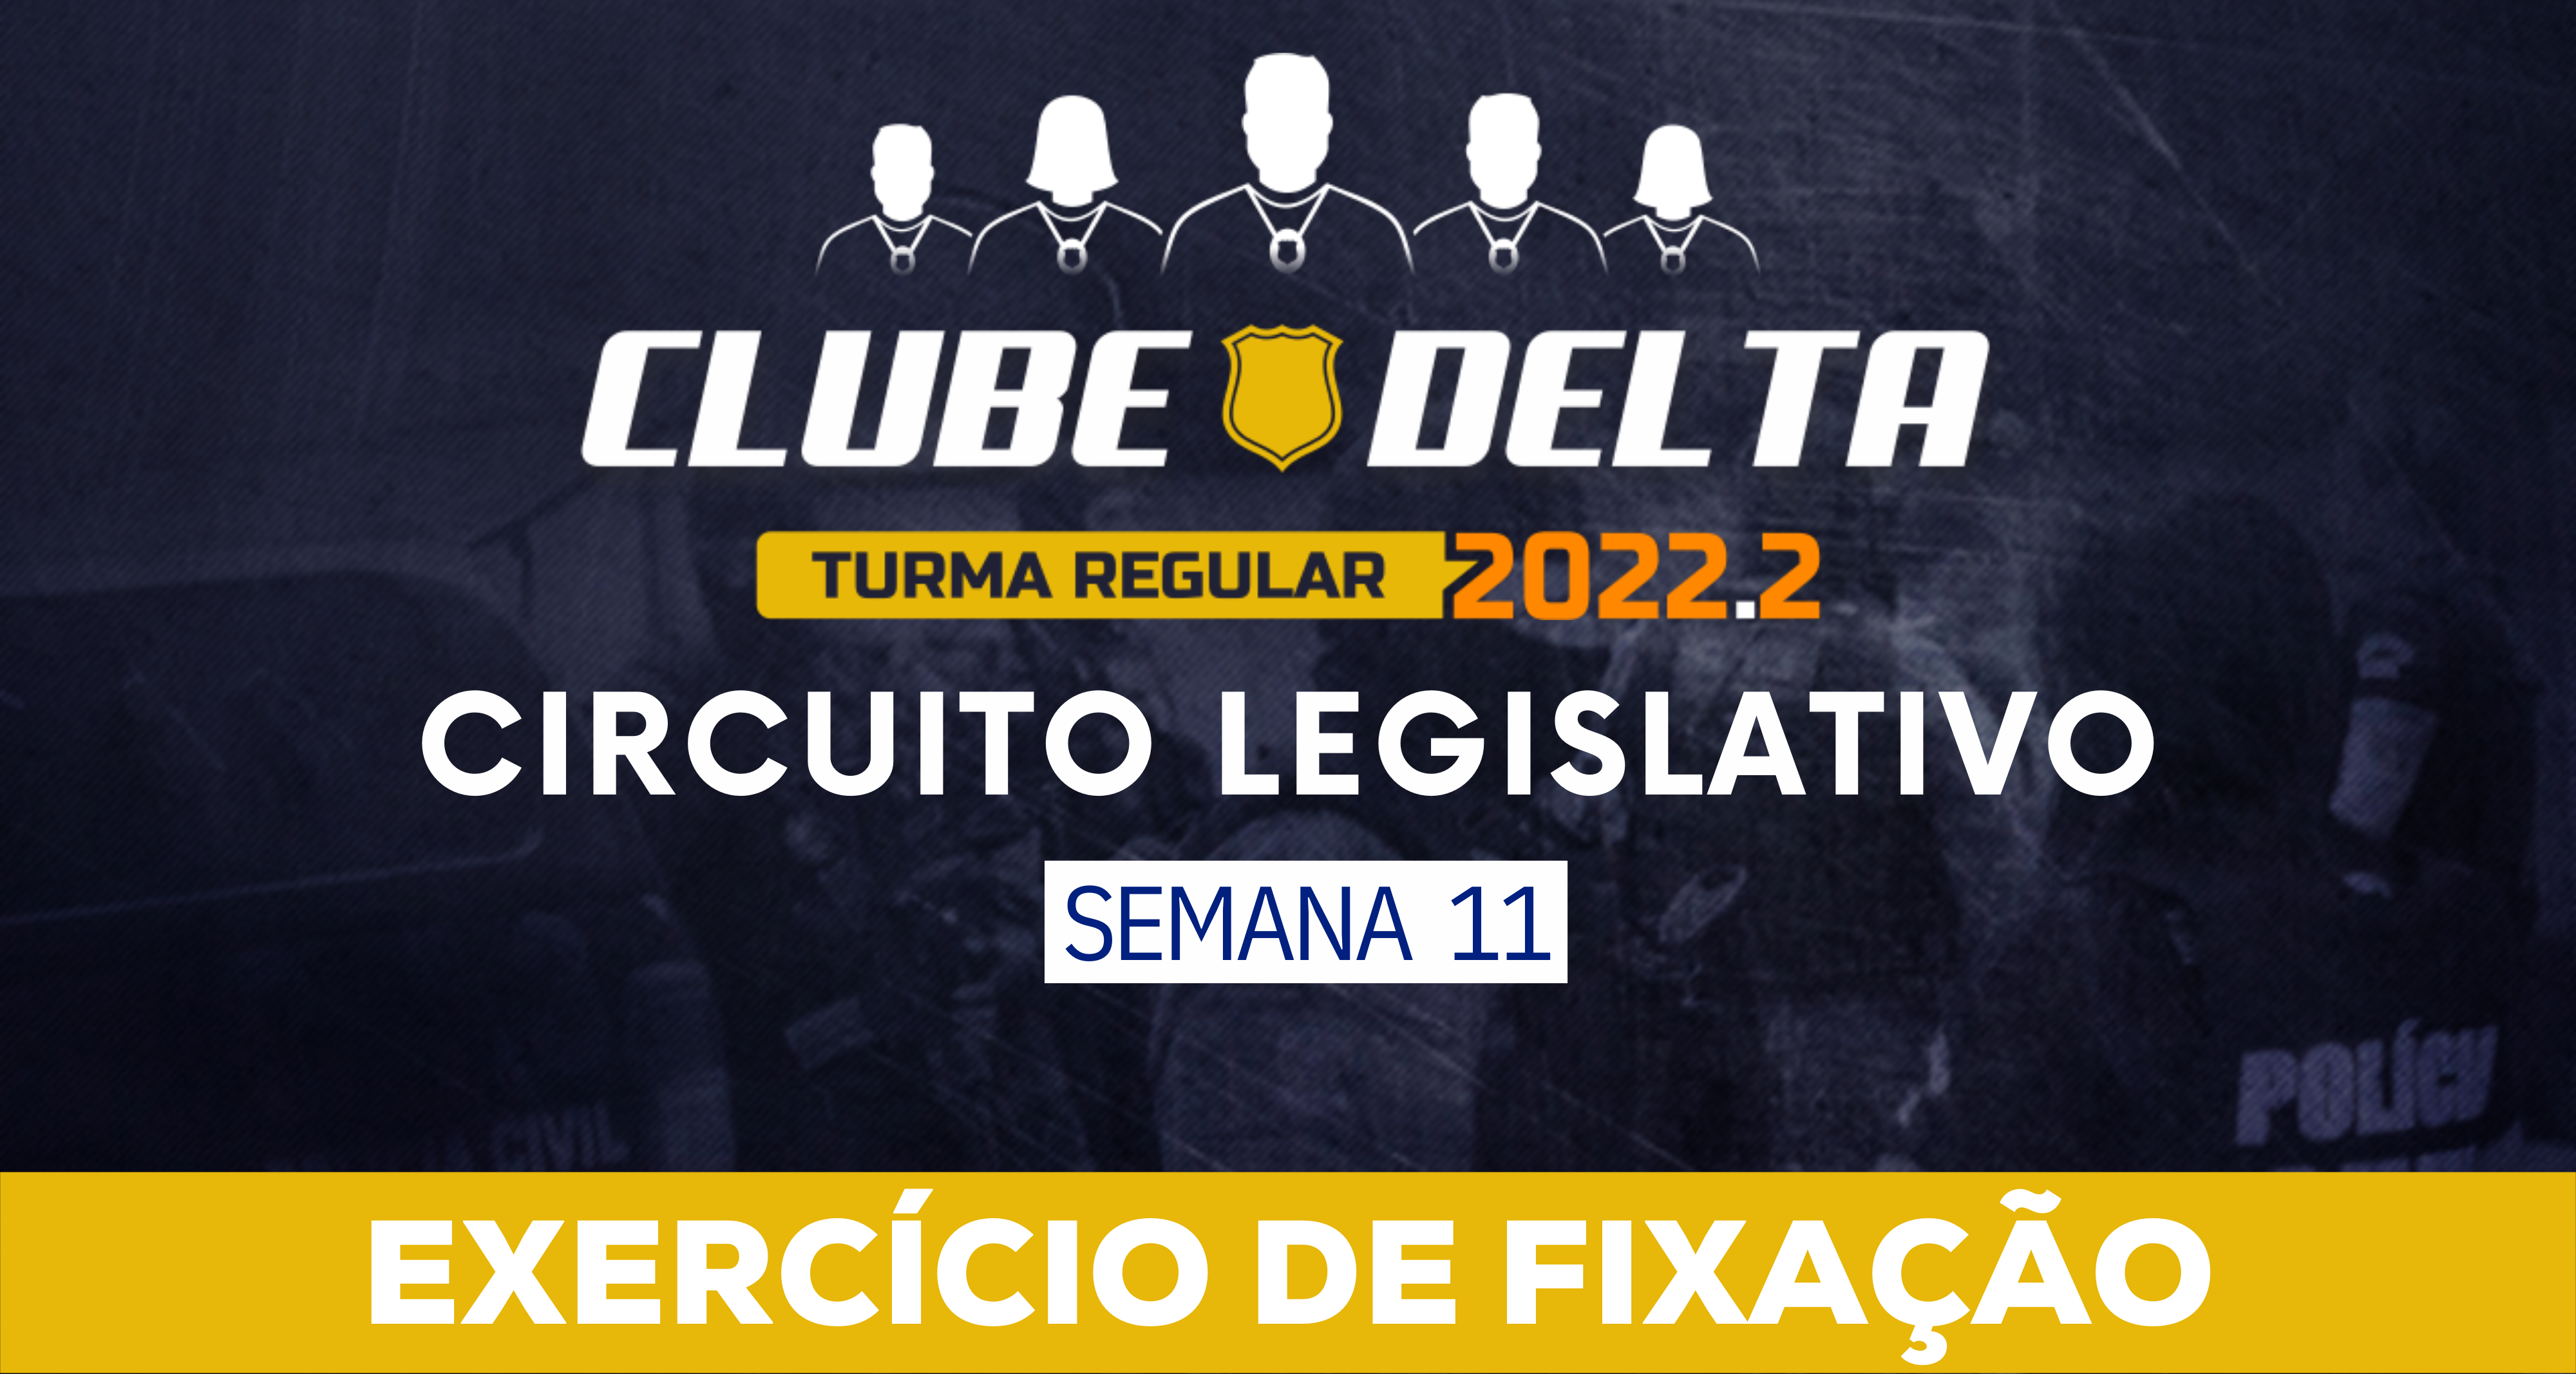 Circuito Legislativo 2022.2 (Clube Delta - Semana 11)